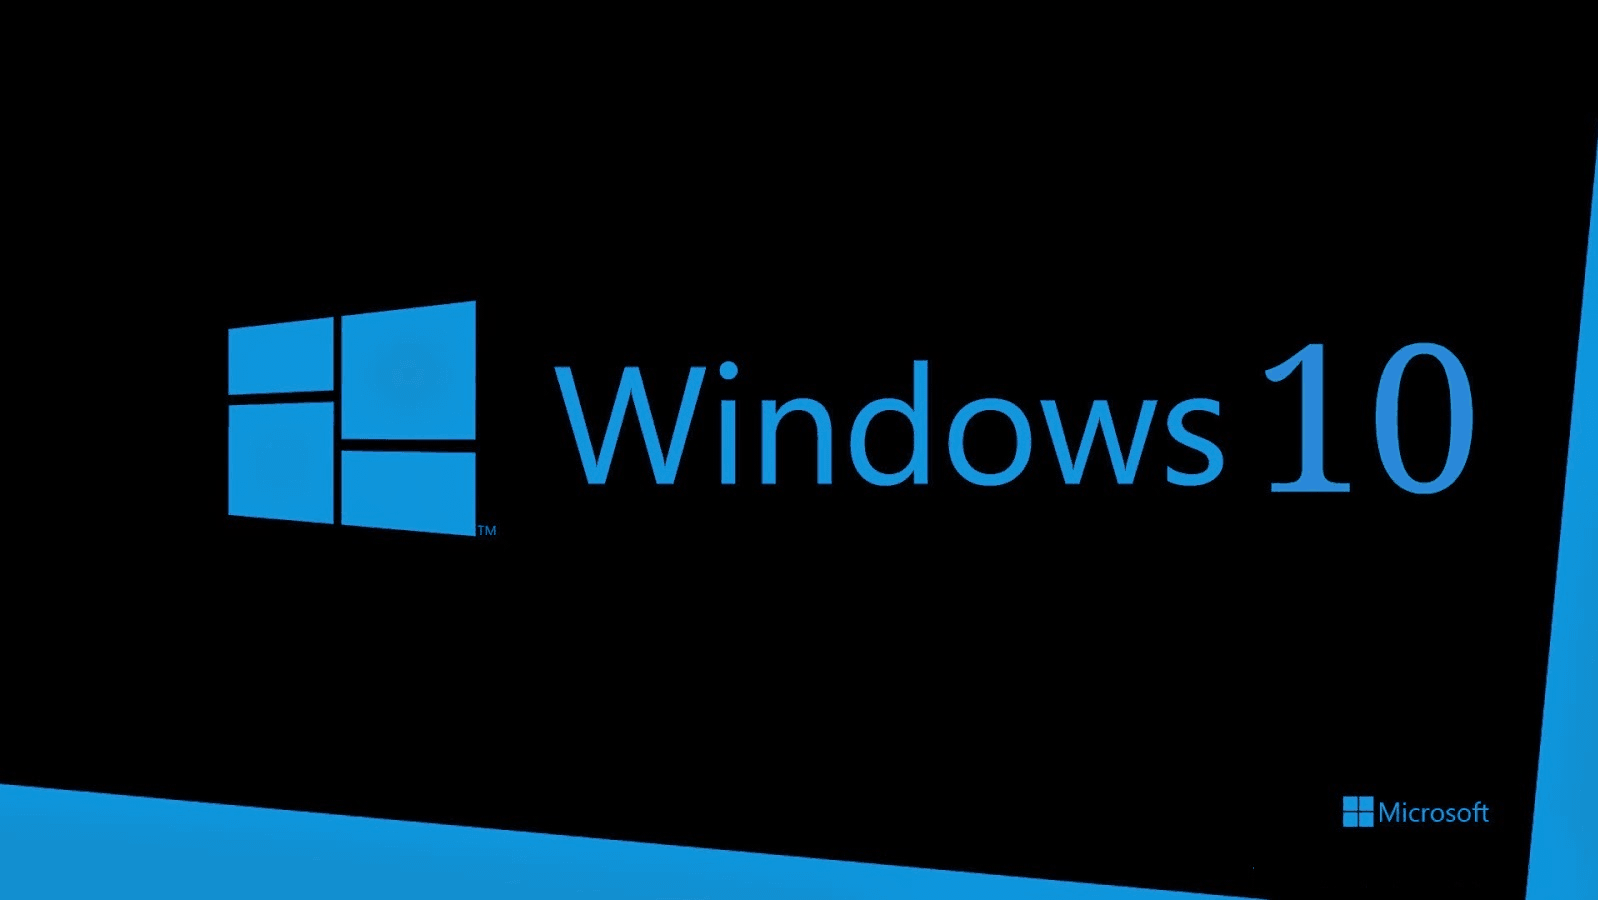 Cum se reinstalează Windows 10